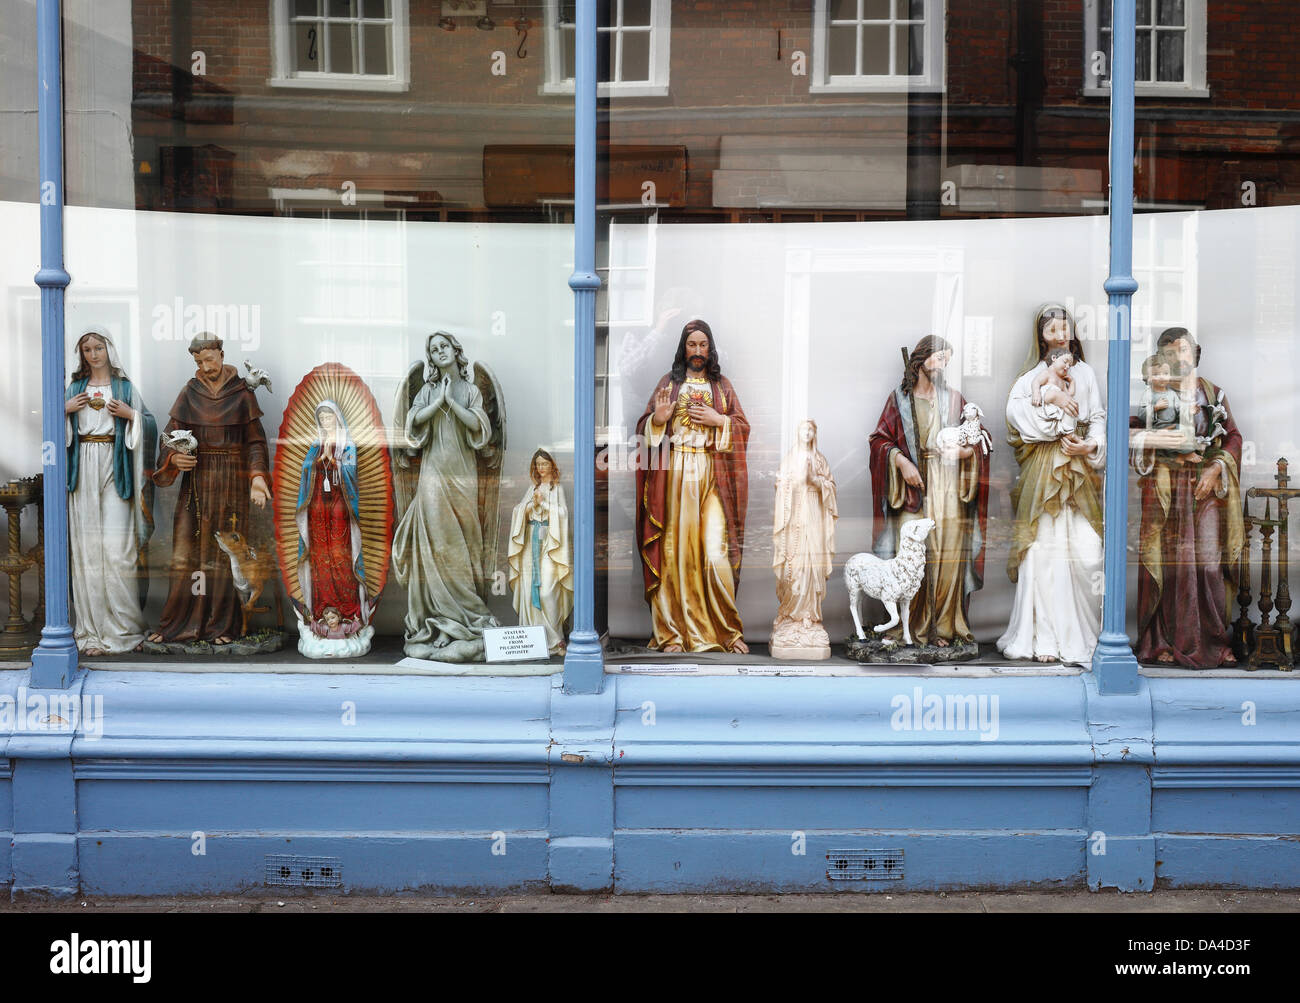 Religiöse Statuen auf dem Display in einem Schaufenster. Stockfoto